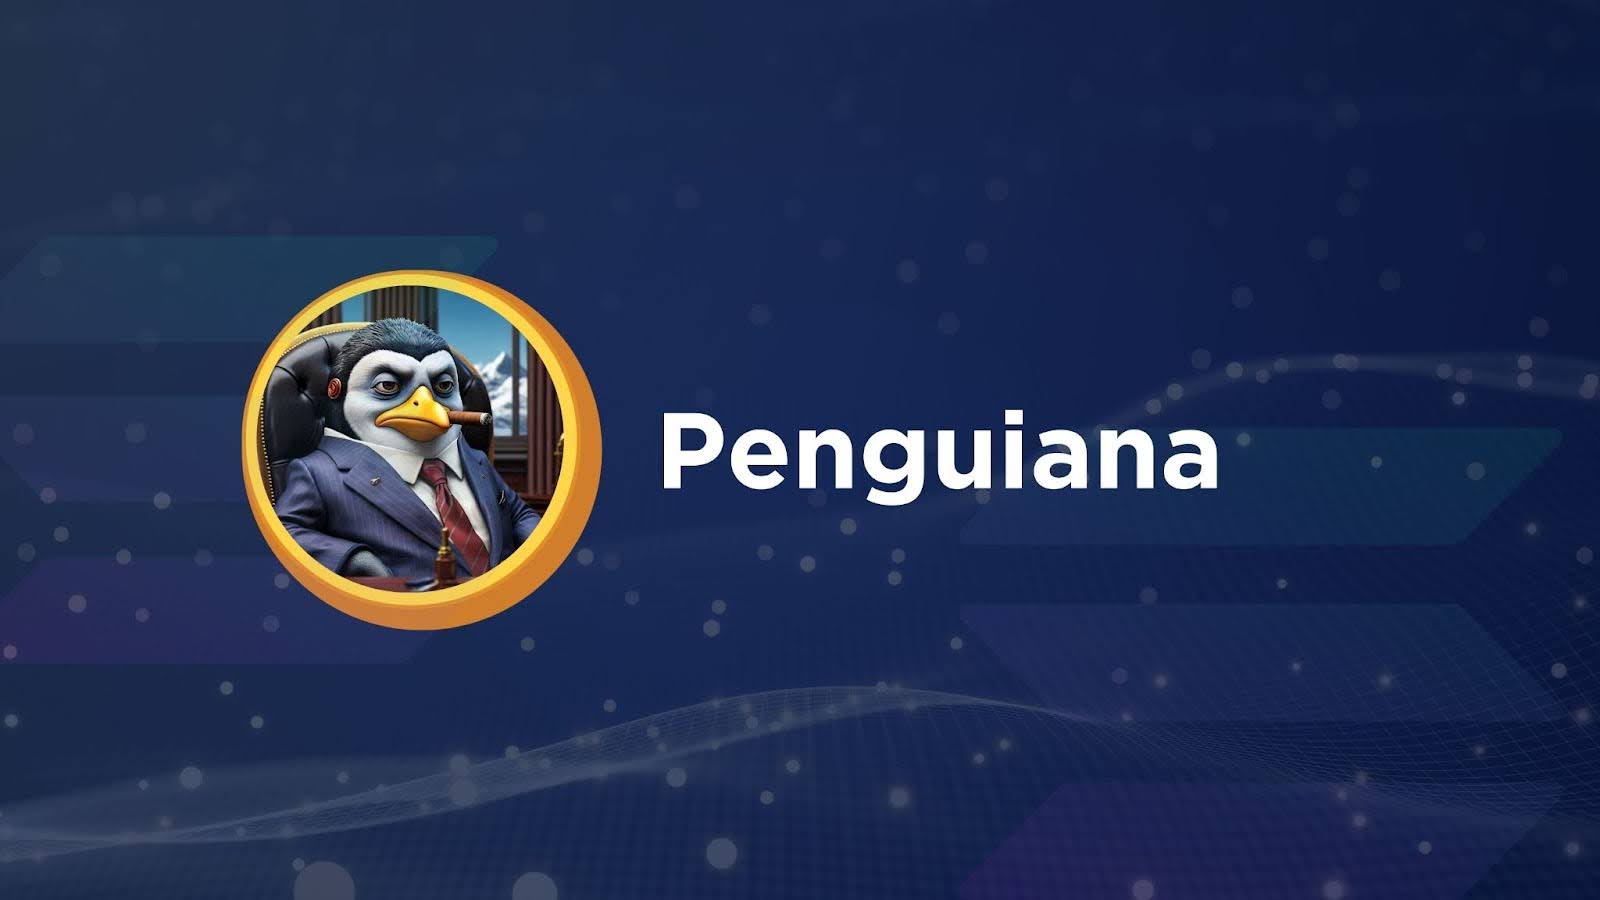 Solana Meme Coin Penguiana Raises $200,000 to Build a Penguin-Themed P2E Game